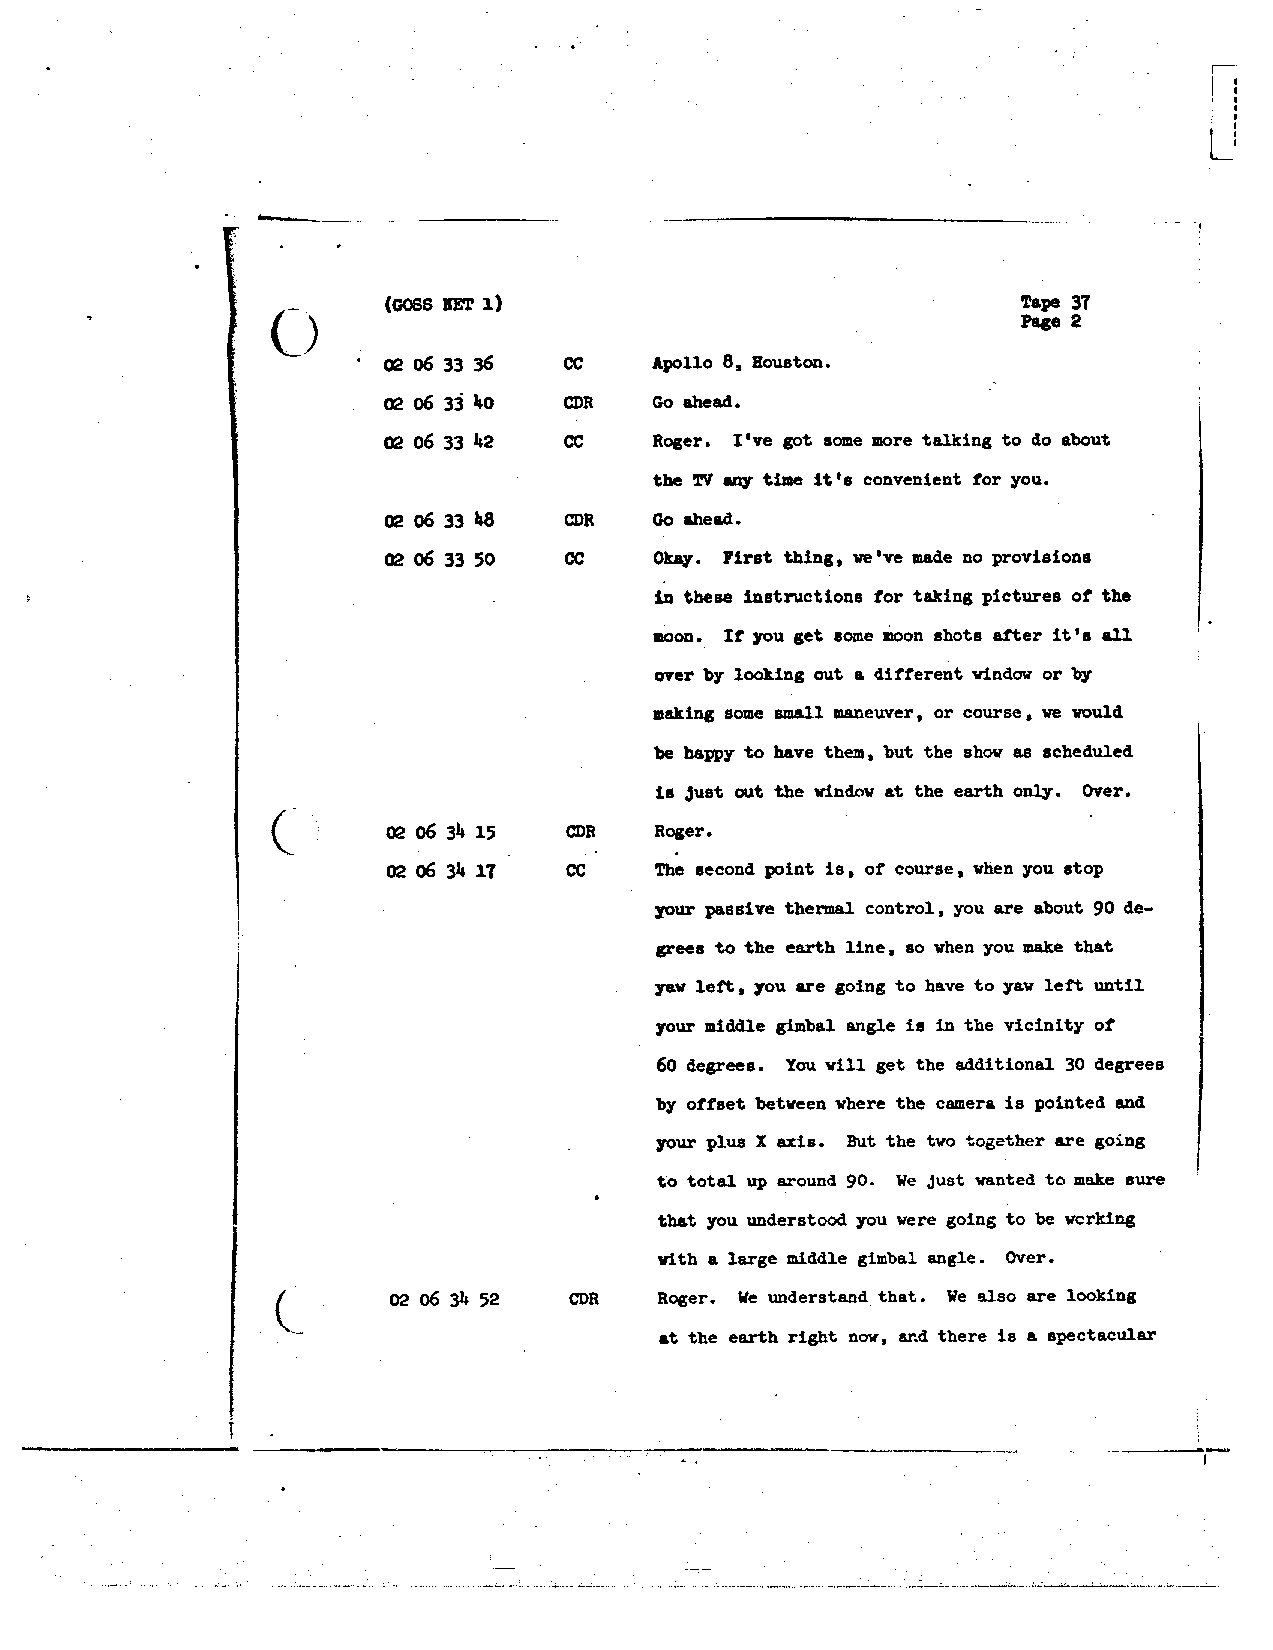 Page 284 of Apollo 8’s original transcript